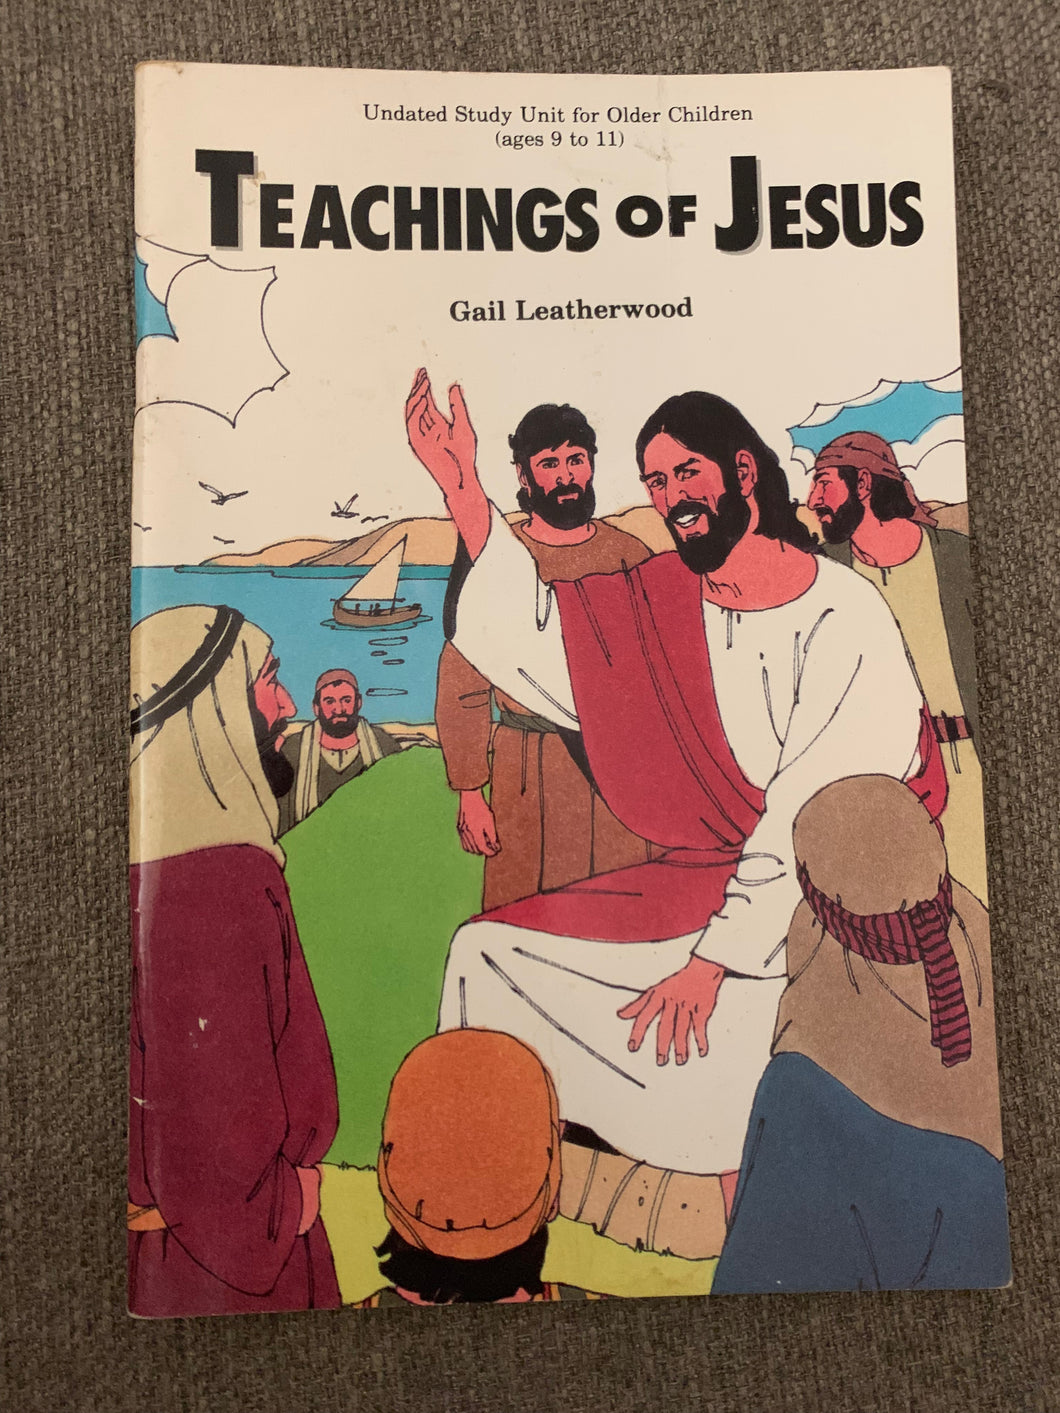 Teachings of Jesus by Gail Leatherwood